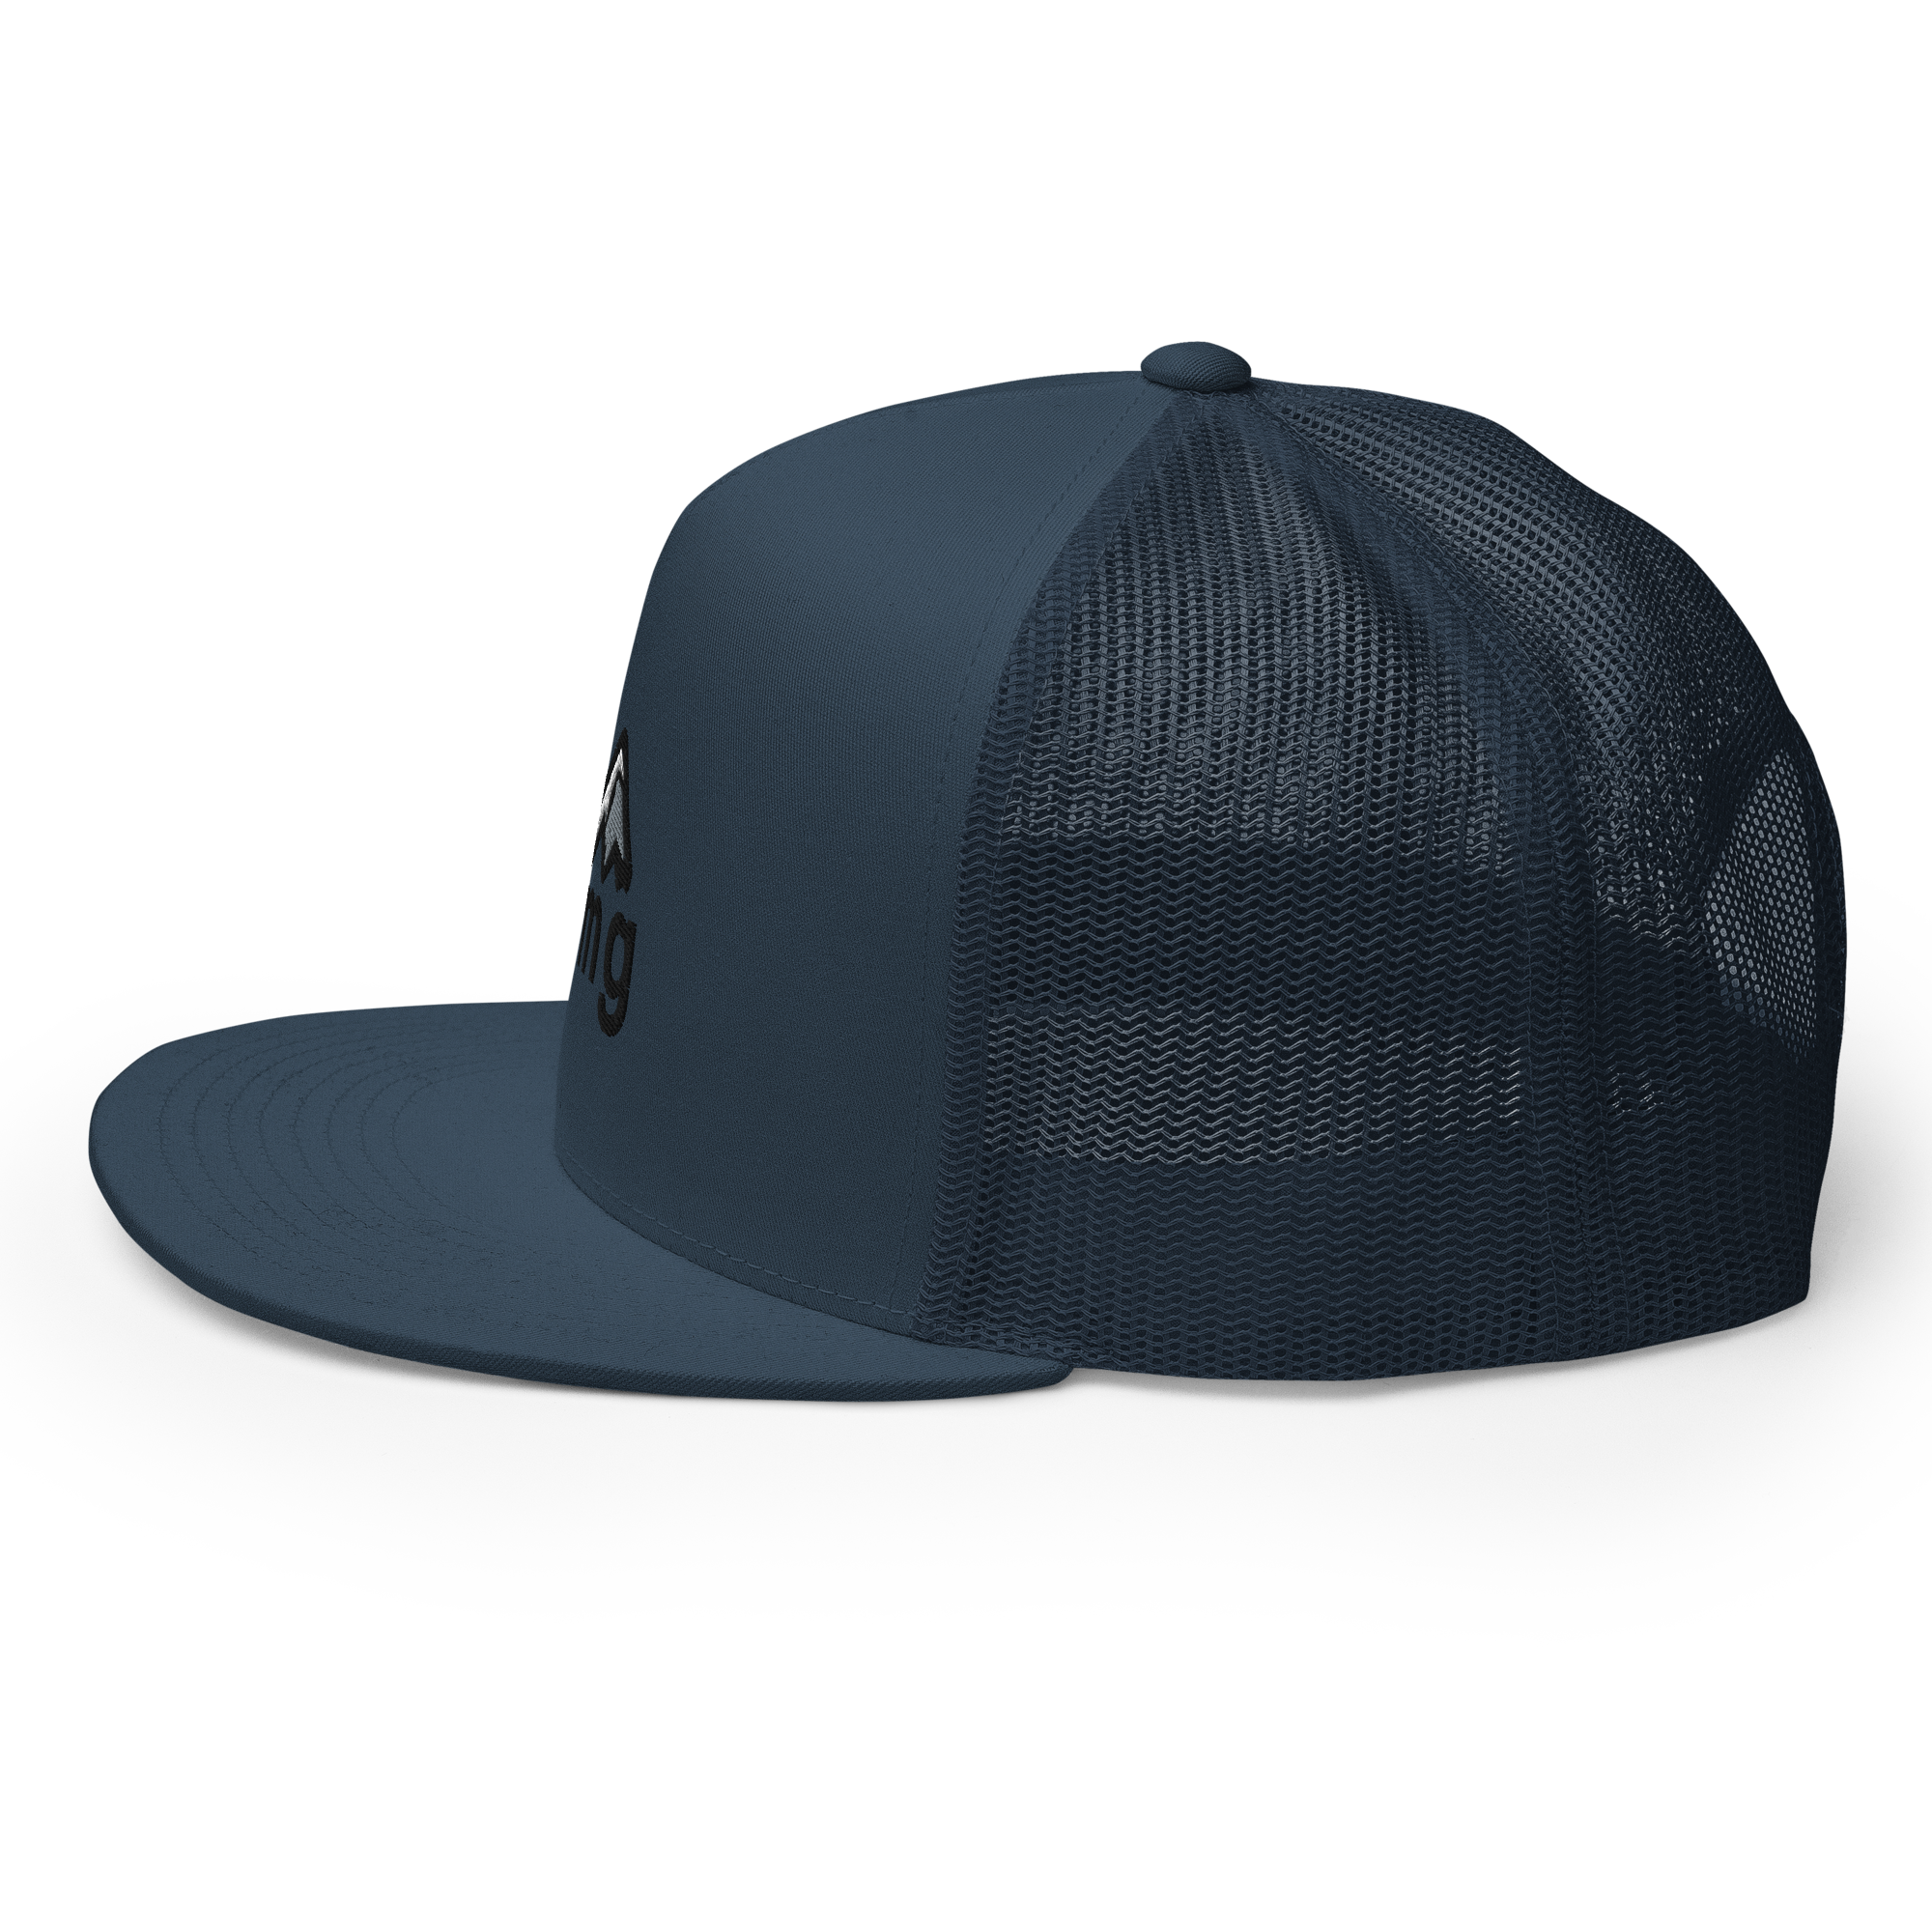 rmg low pro trucker hat side view blue